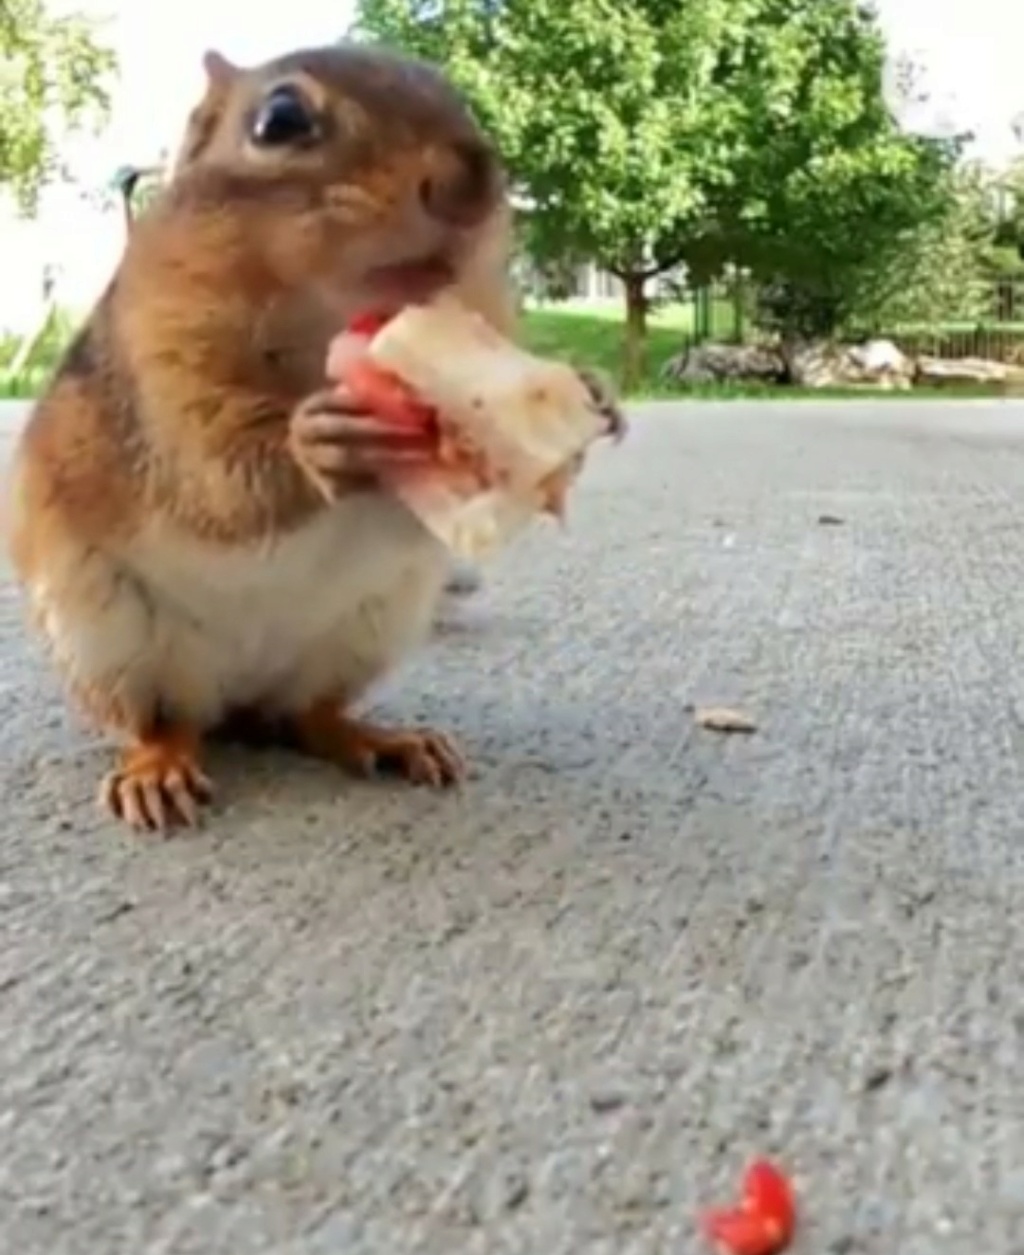 Gli scoiattoli non mangiano solo noccioline - Pagina 7 Scre2269